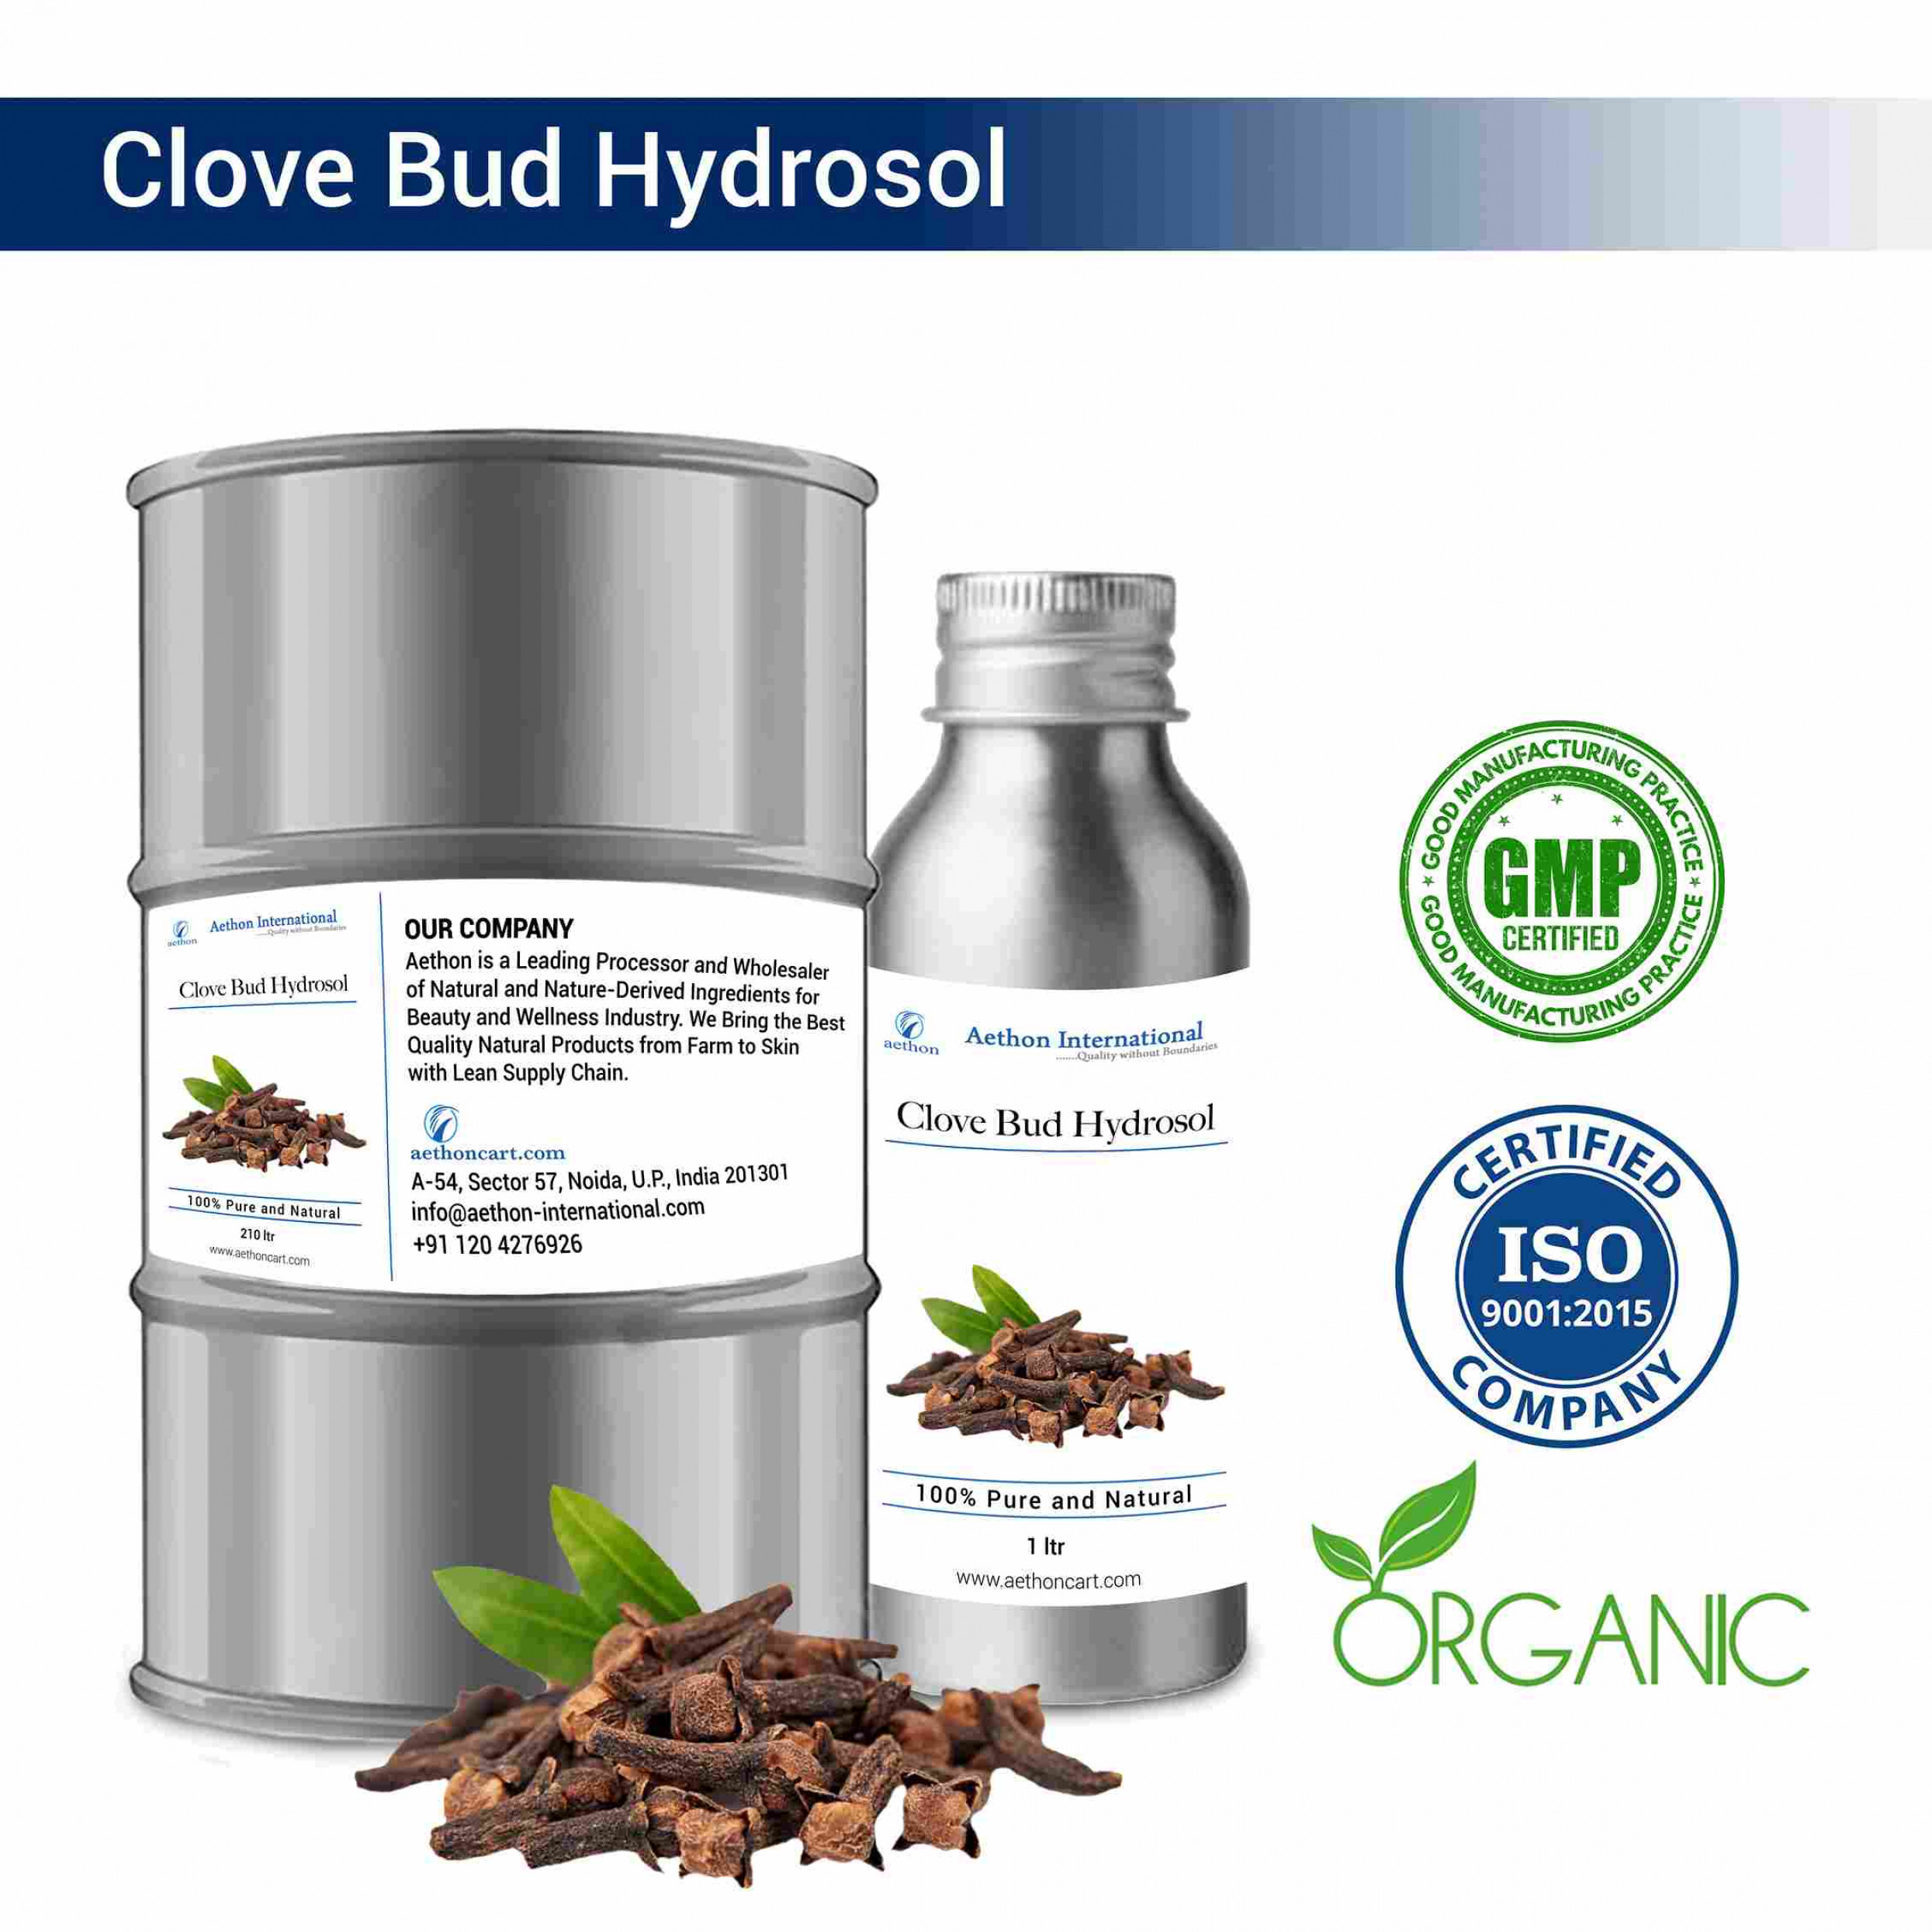 Clove Bud Hydrosol